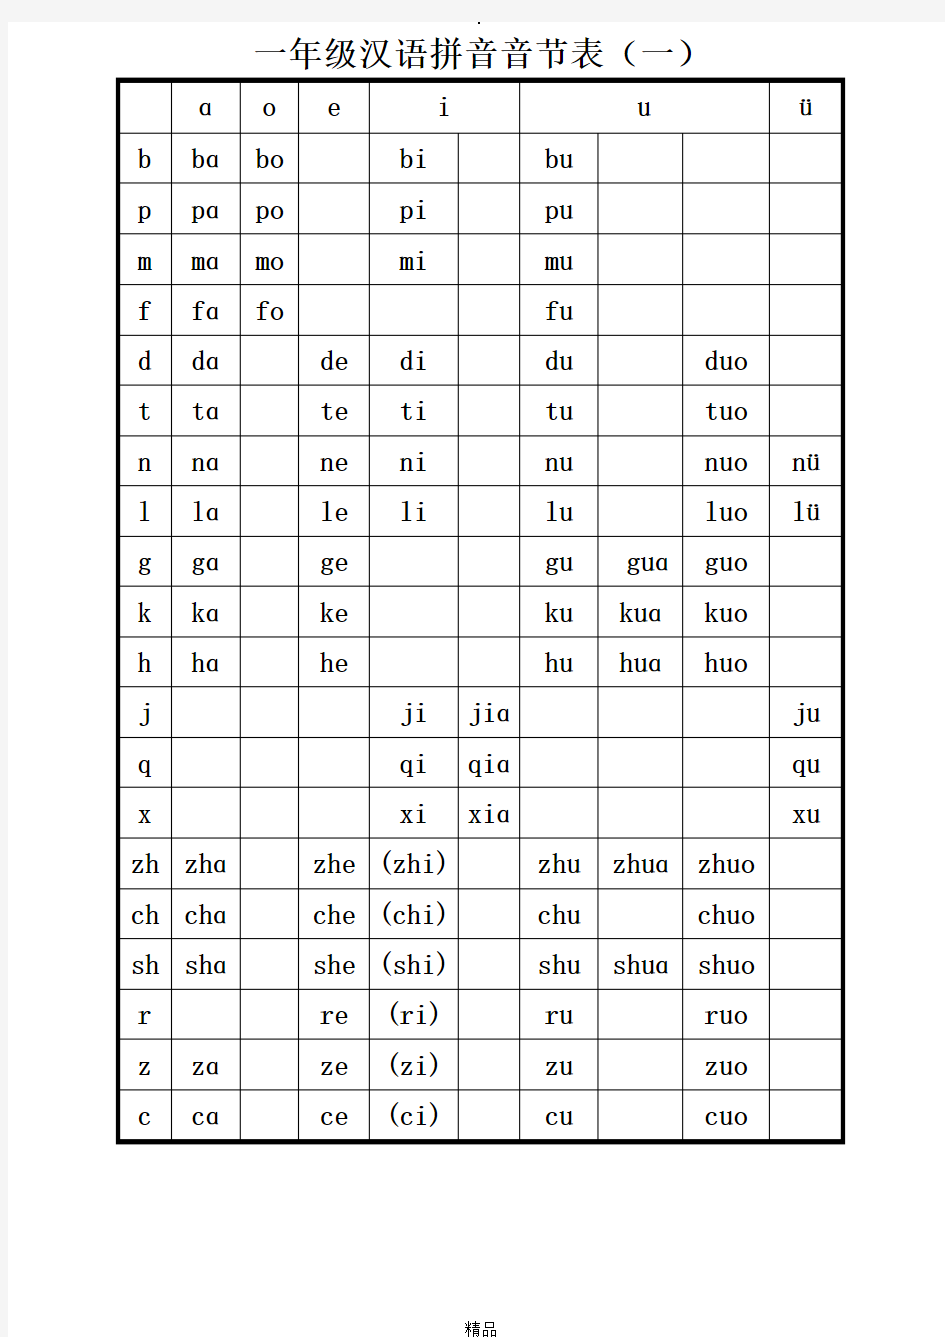 打印版一年级汉语拼音音节表完全版